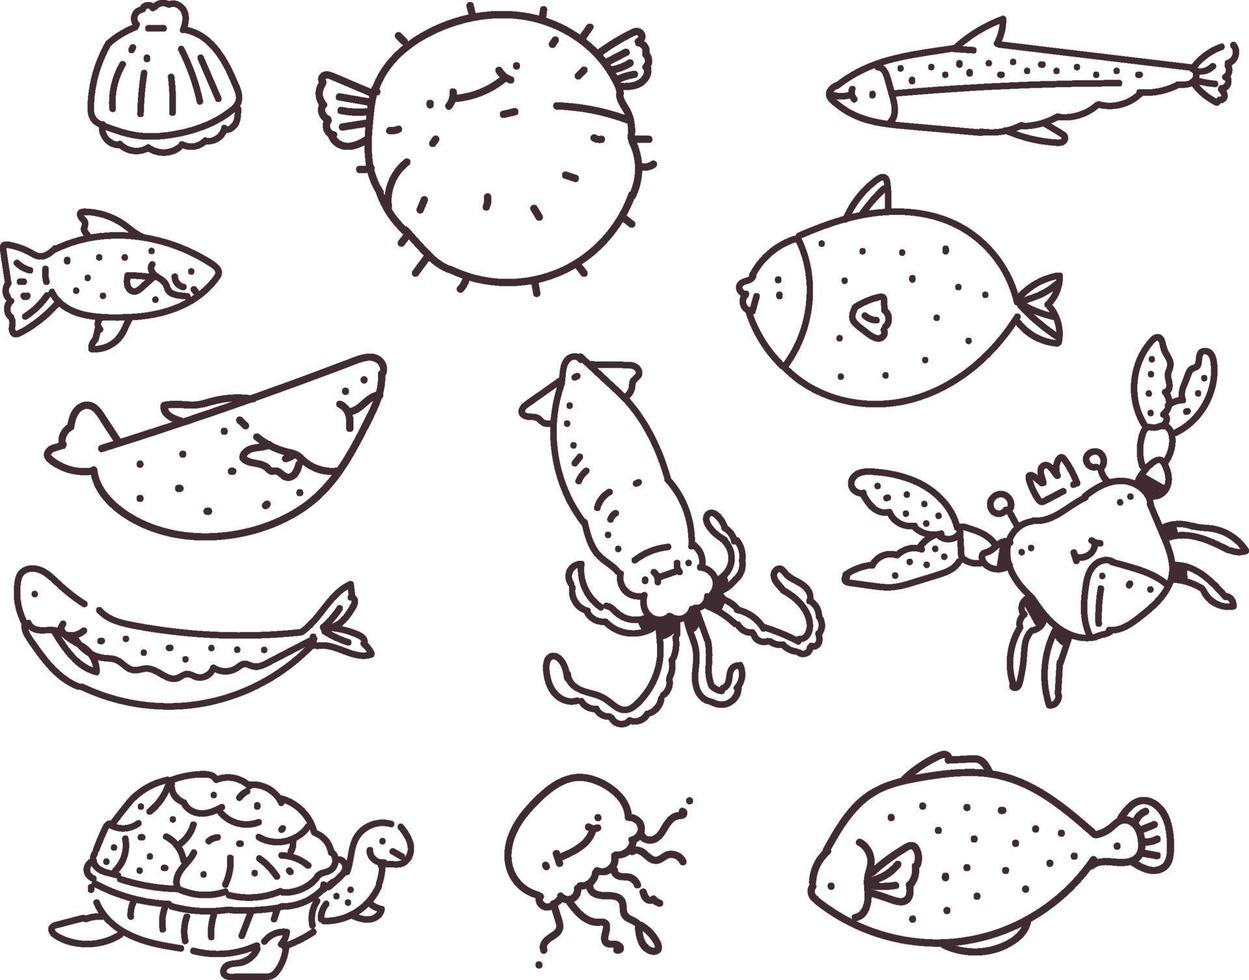 Satz von verschiedenen Seefischen. Handzeichnung Seefisch Gekritzel Vektor-Illustration vektor